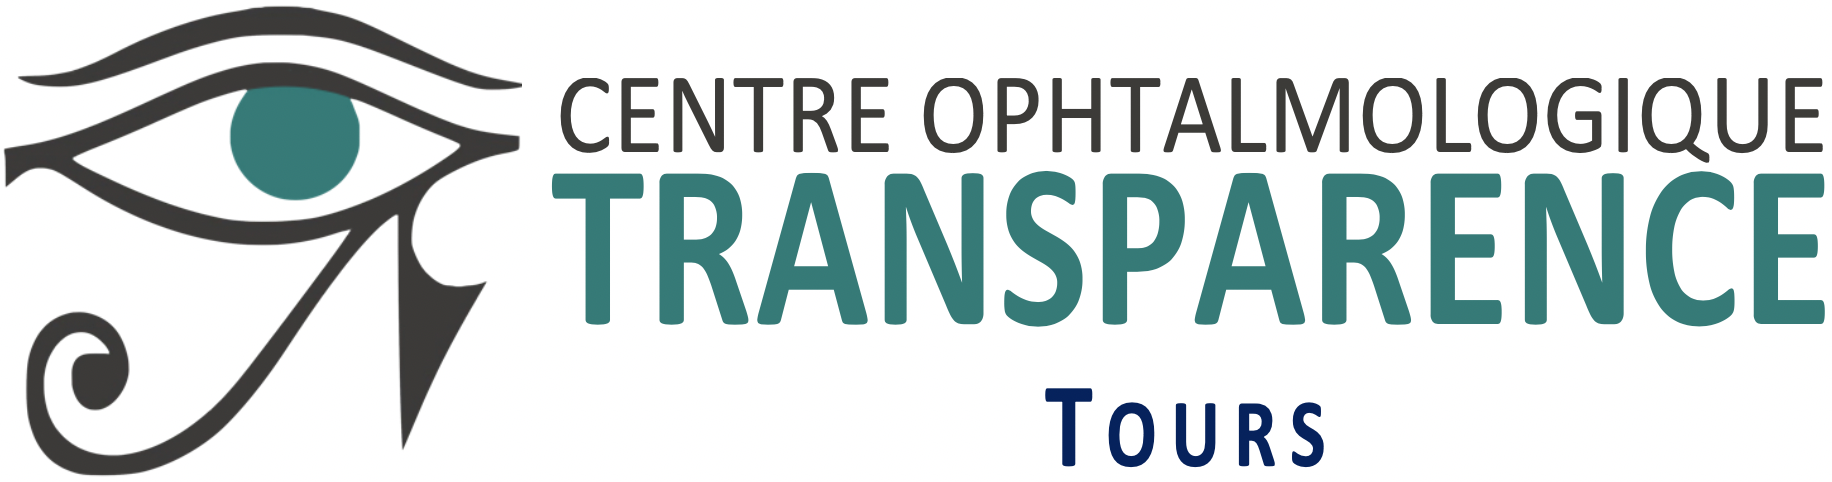 Centre Ophtalmologique Transparence Tours